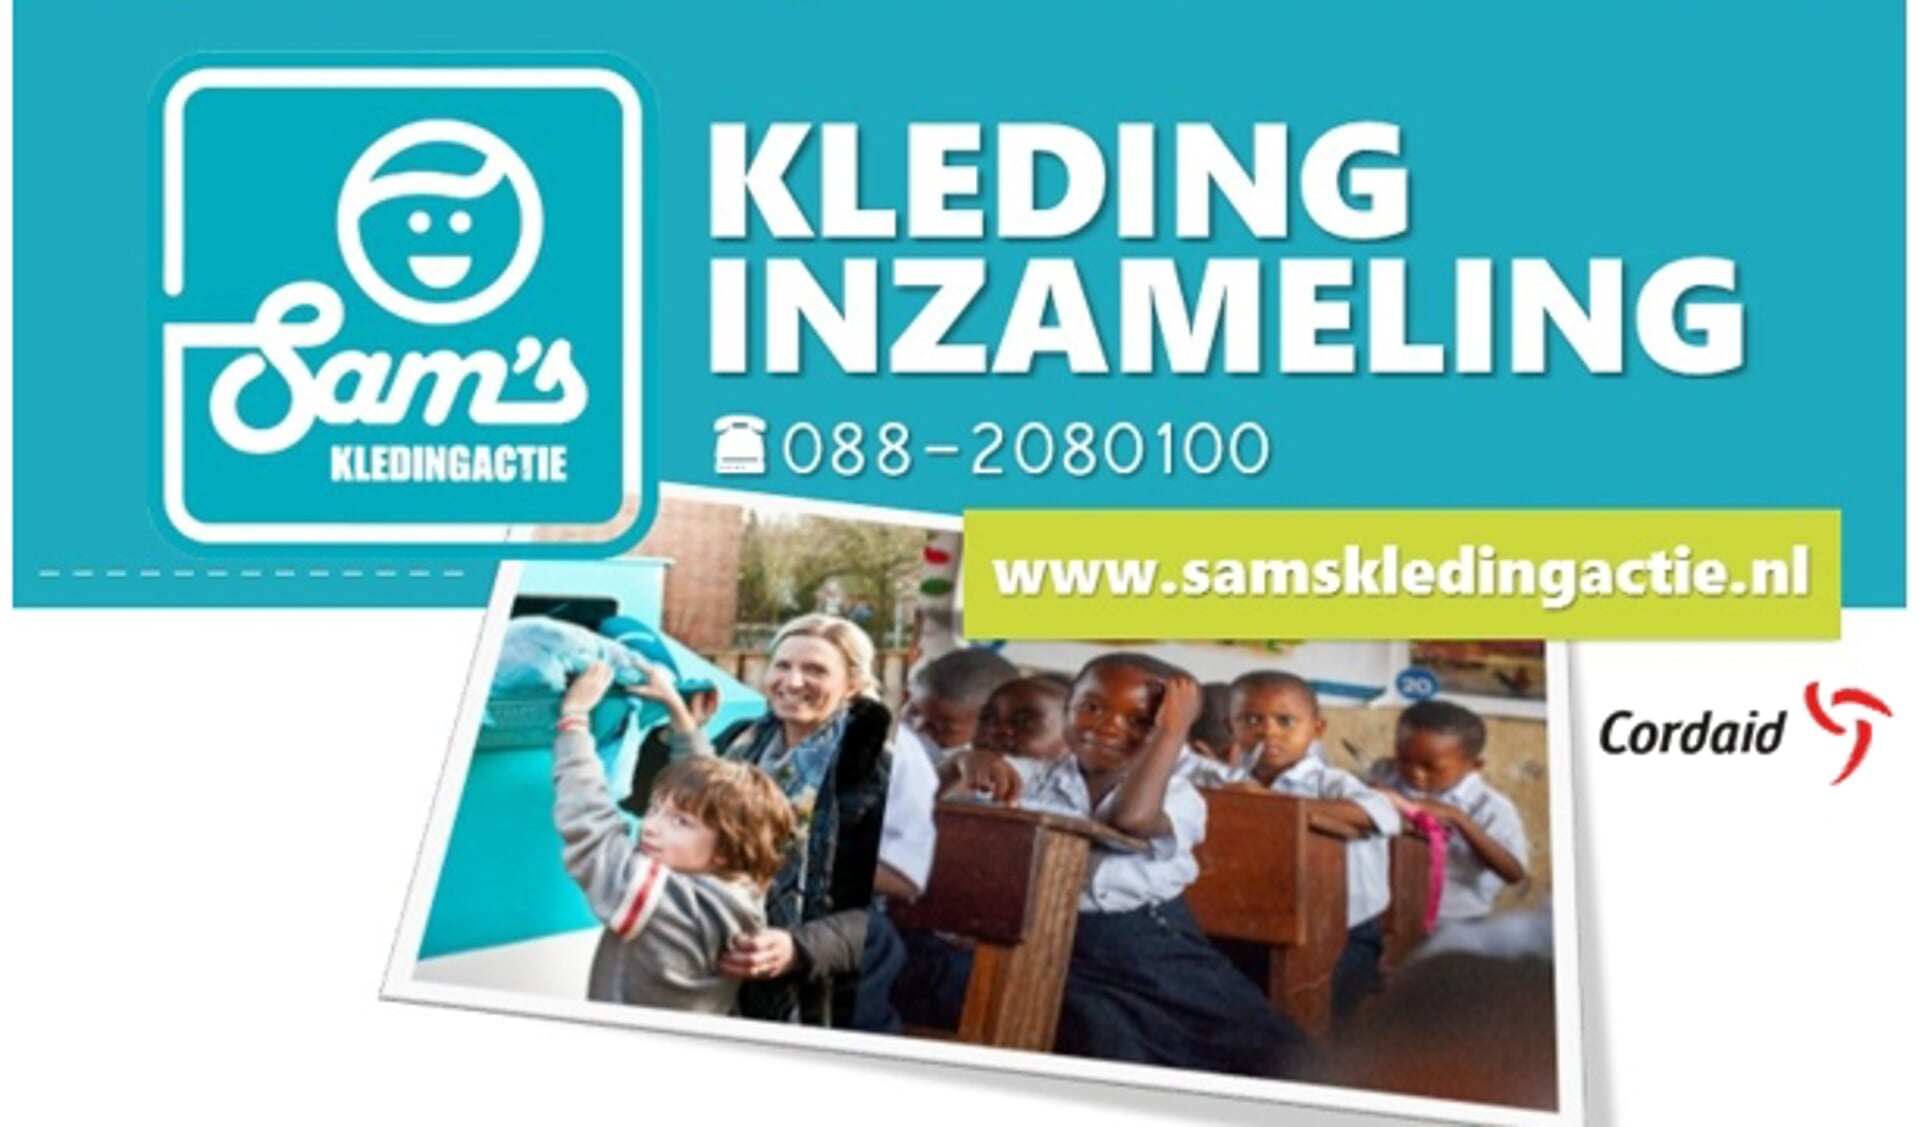 Sam’s Kledingactie voor schoolkinderen in Oeganda